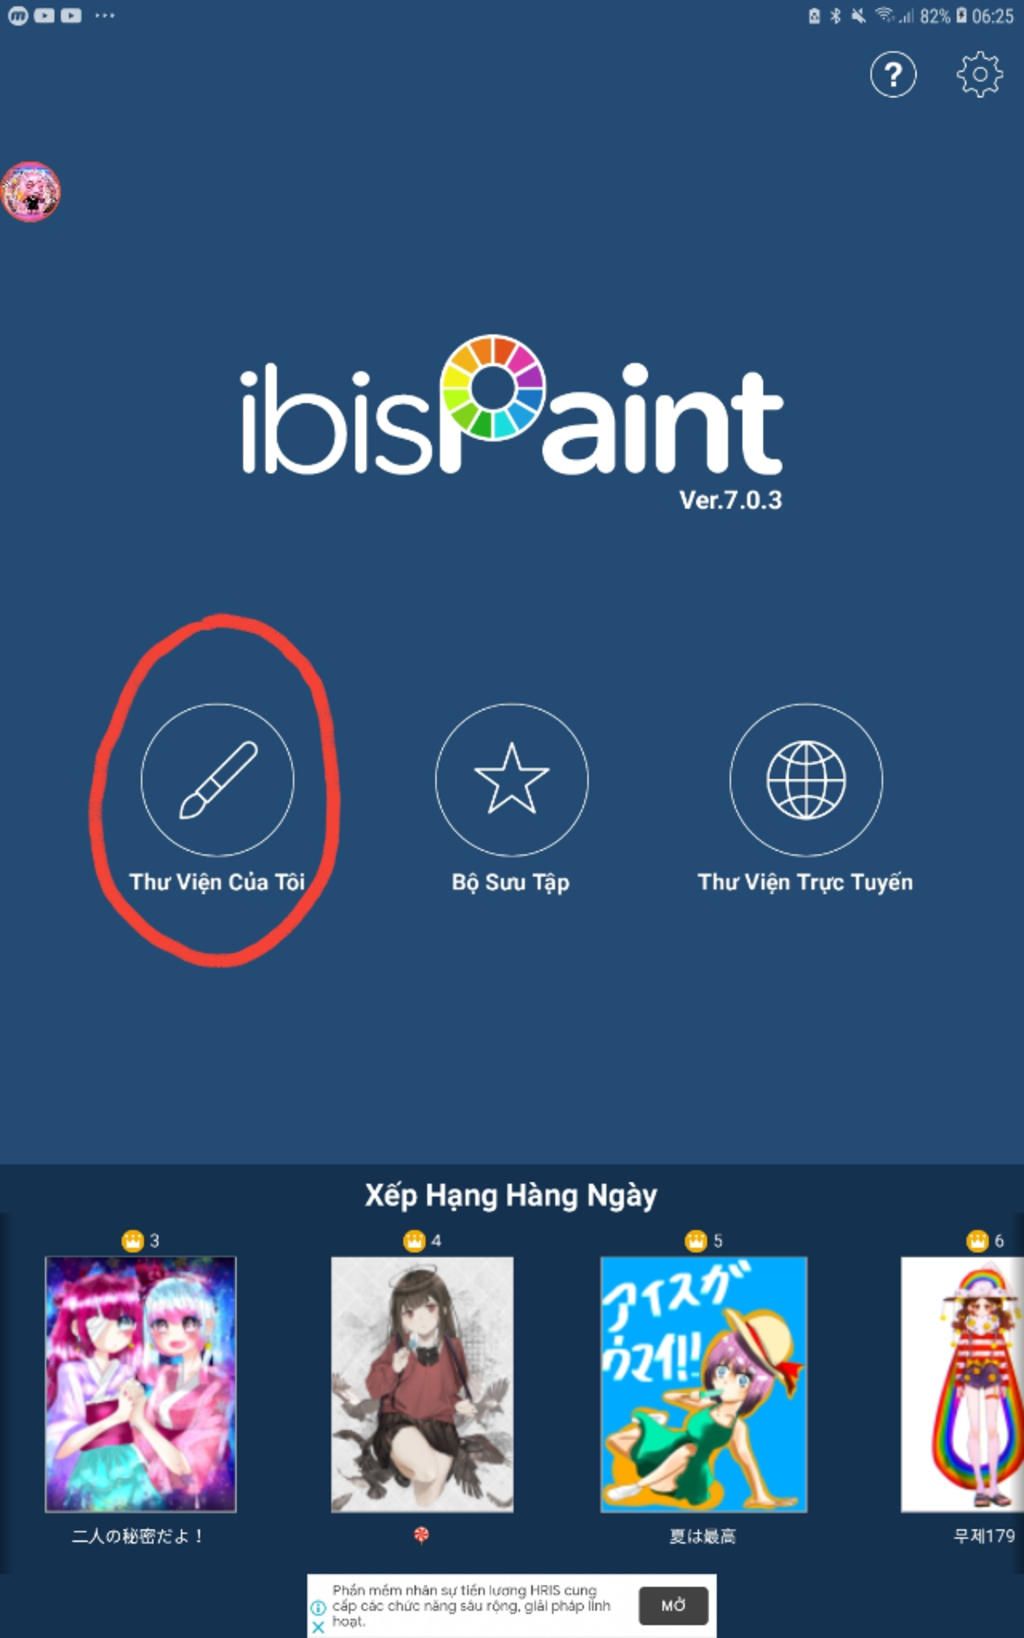 Hướng dẫn sử dụng IbisPaint X giờ đây dễ dàng hơn bao giờ hết. Với những video hướng dẫn chi tiết và dễ hiểu, bạn có thể dễ dàng khám phá các tính năng mới, tìm hiểu các bí quyết và cải thiện kỹ năng vẽ của mình. Tải ngay IbisPaint X và tham gia cộng đồng sáng tạo năng động!